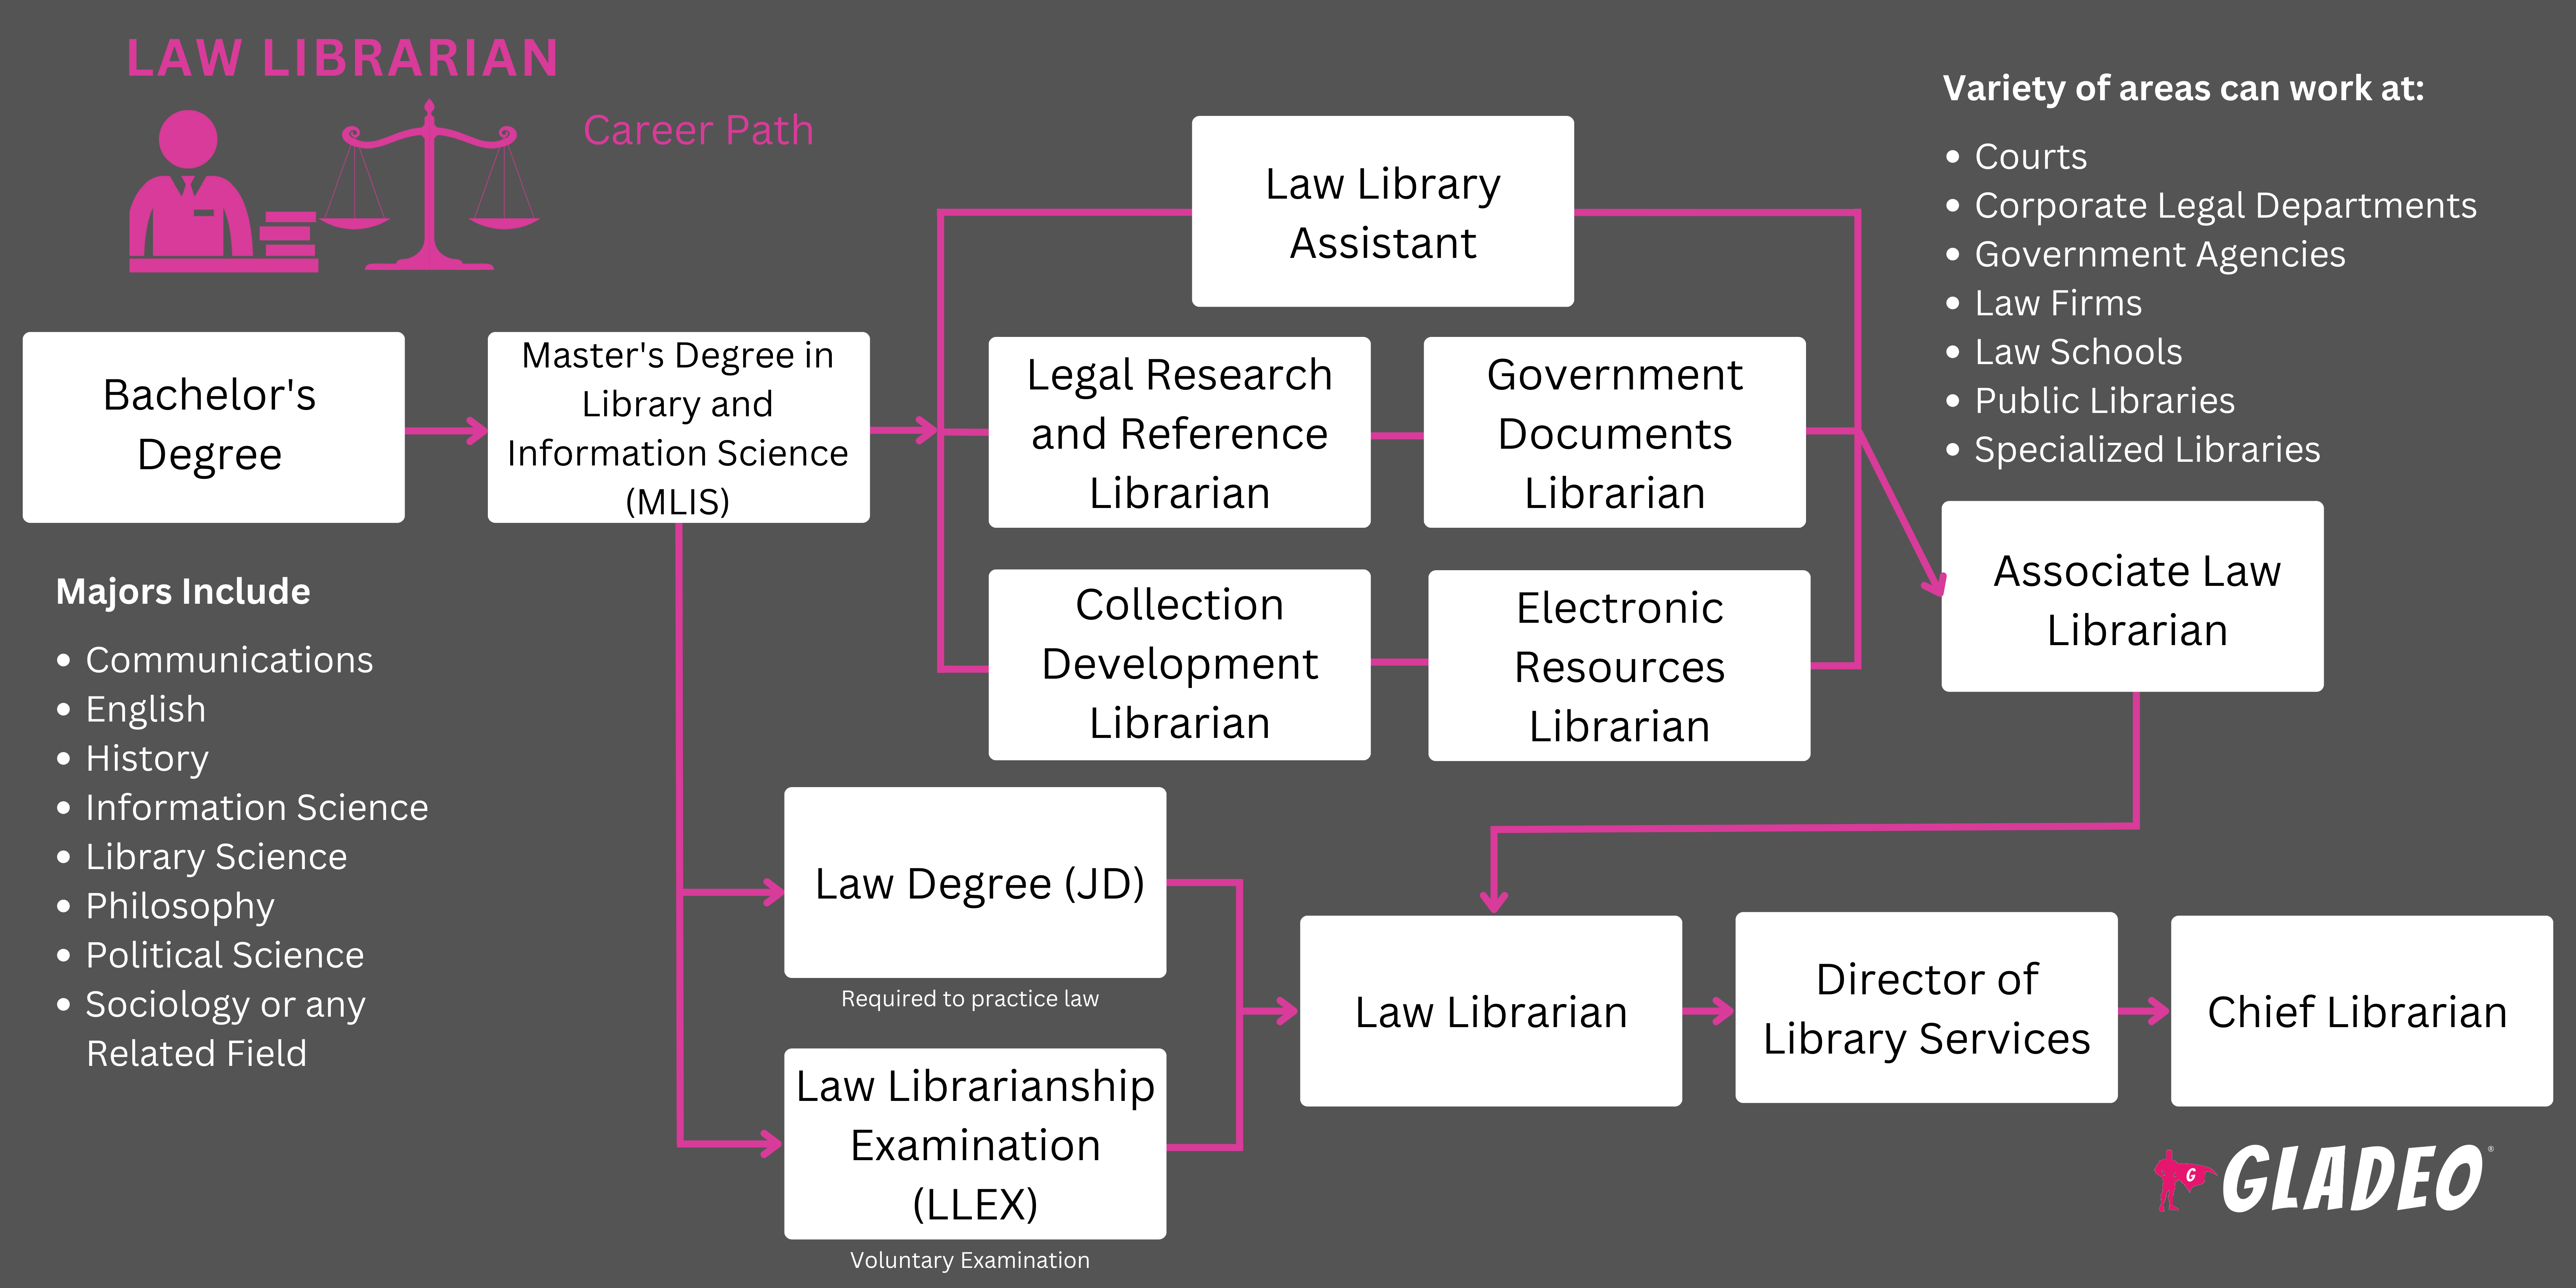 法律图书馆员路线图